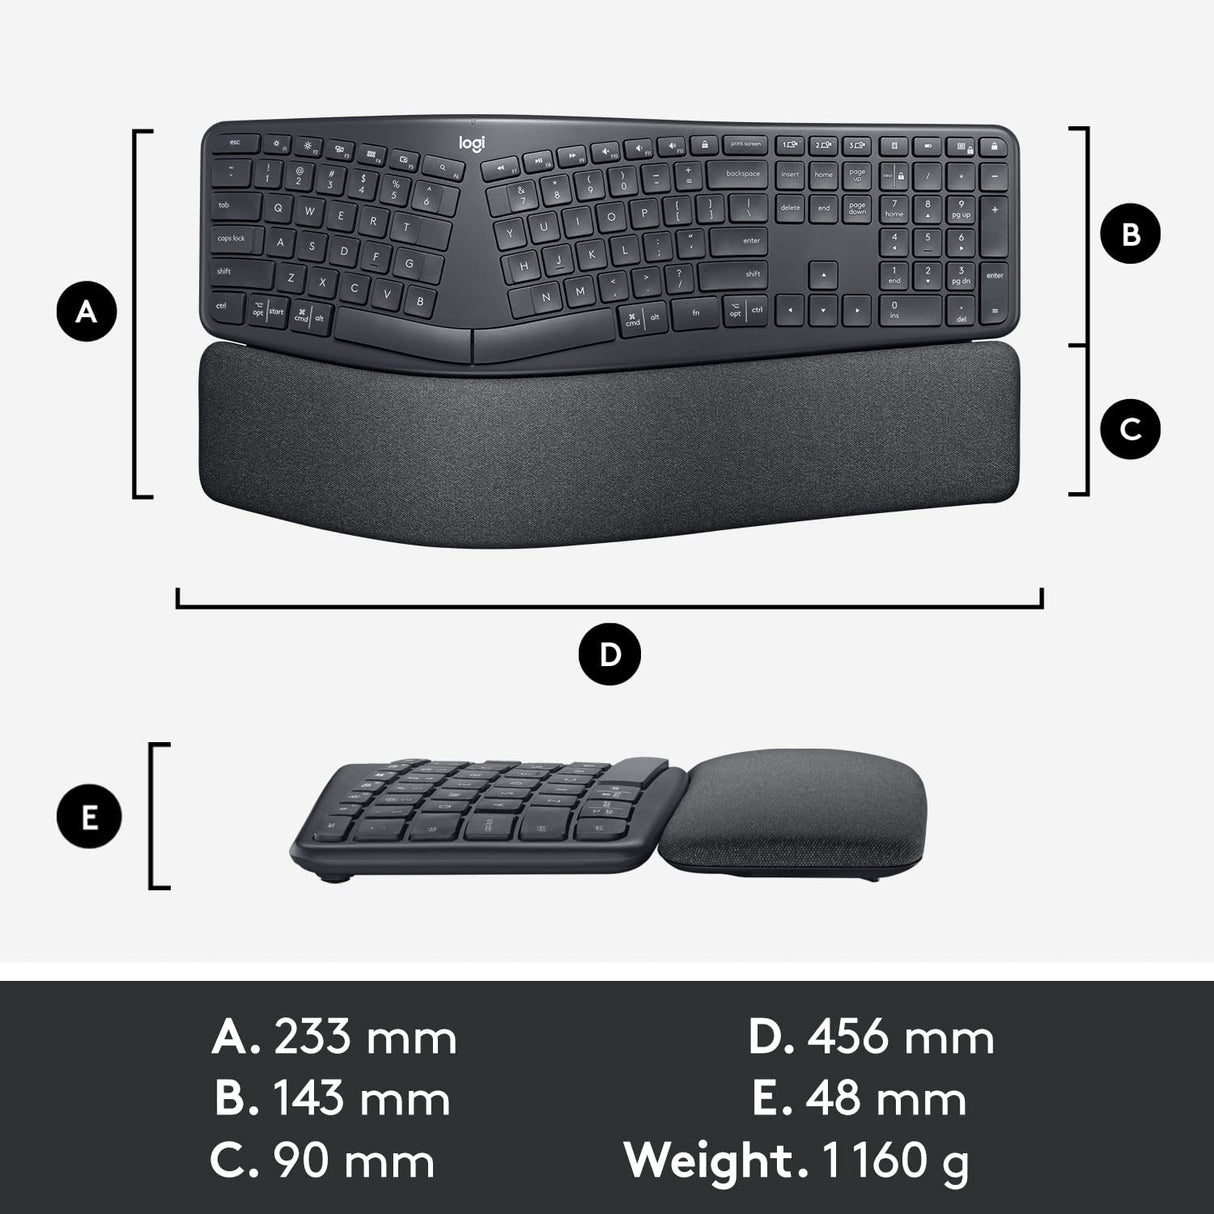 Logitech ERGO K860 Wireless Keyboard - black